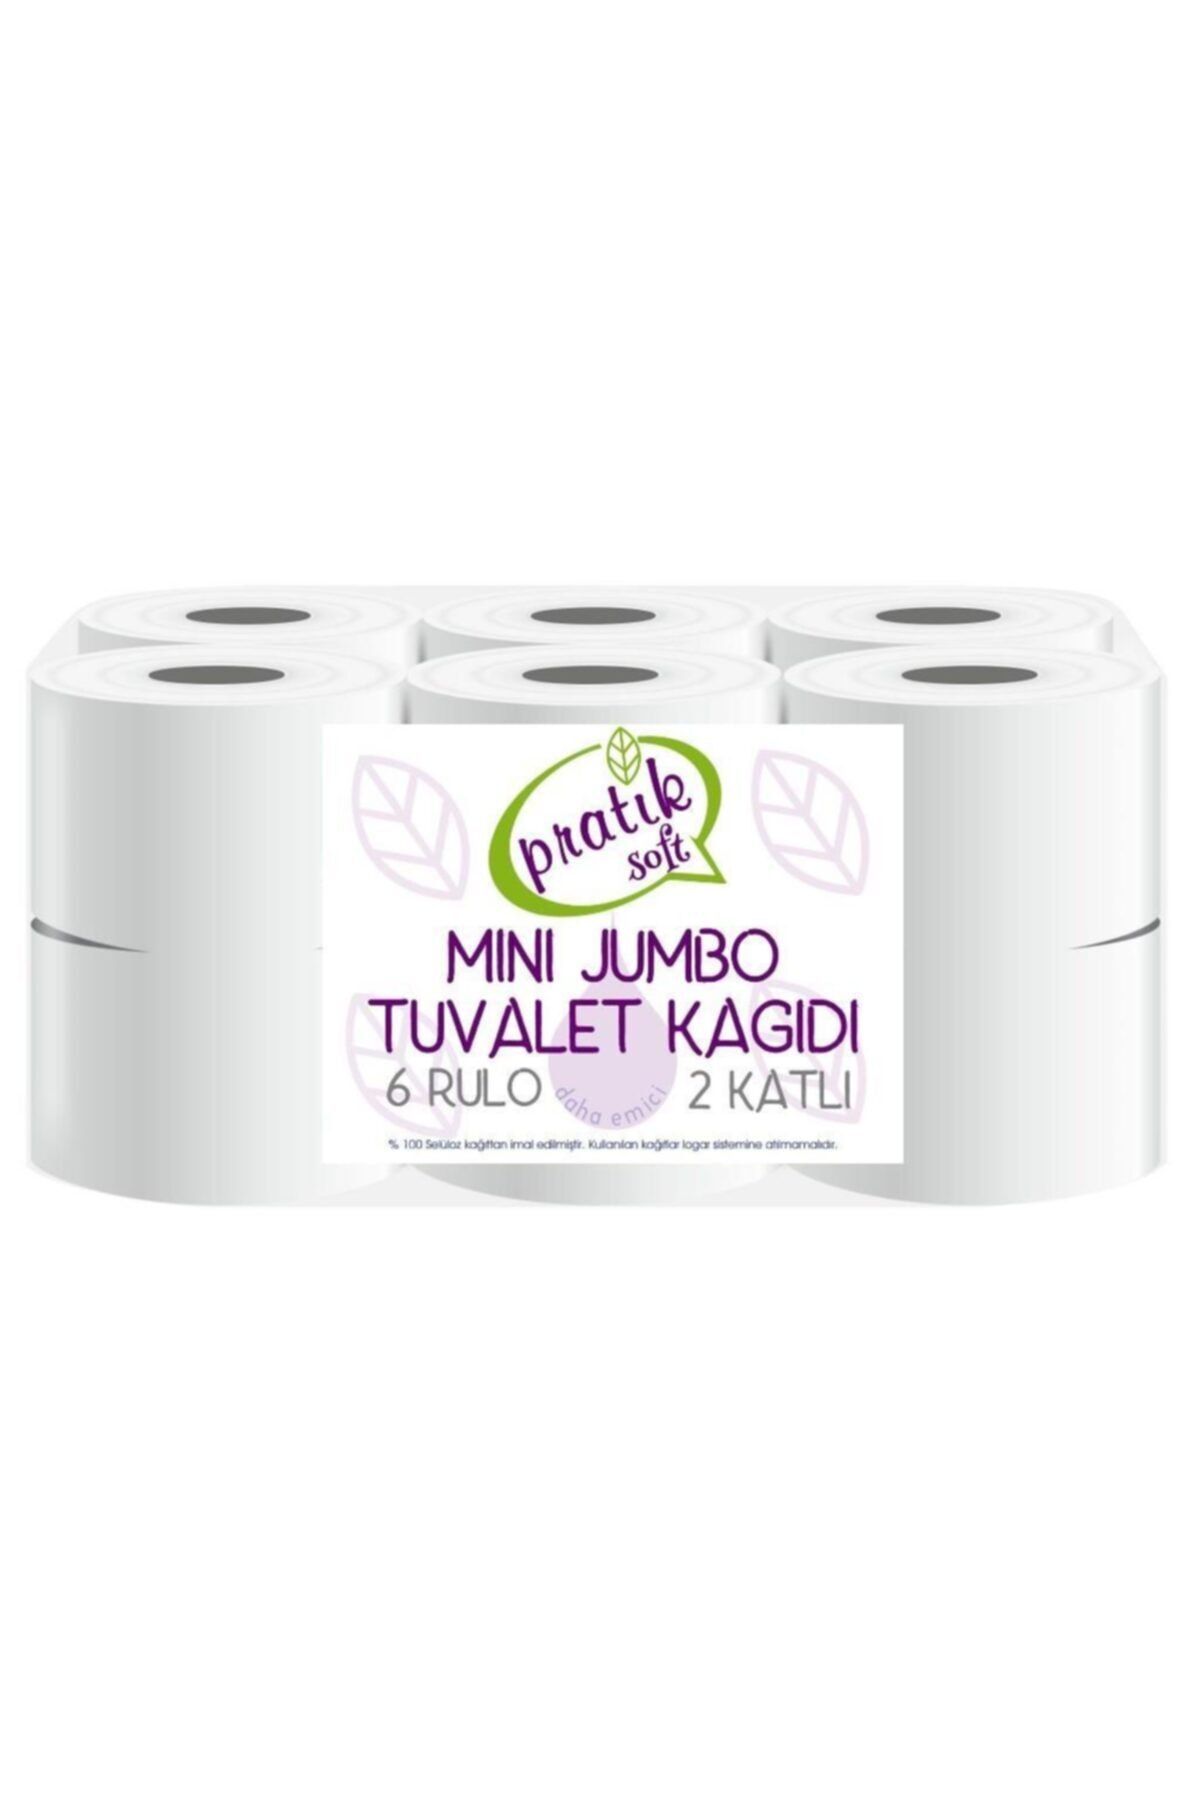 Pratiksoft Mini Jumbo Tuvalet Kağıdı 12 Rulo